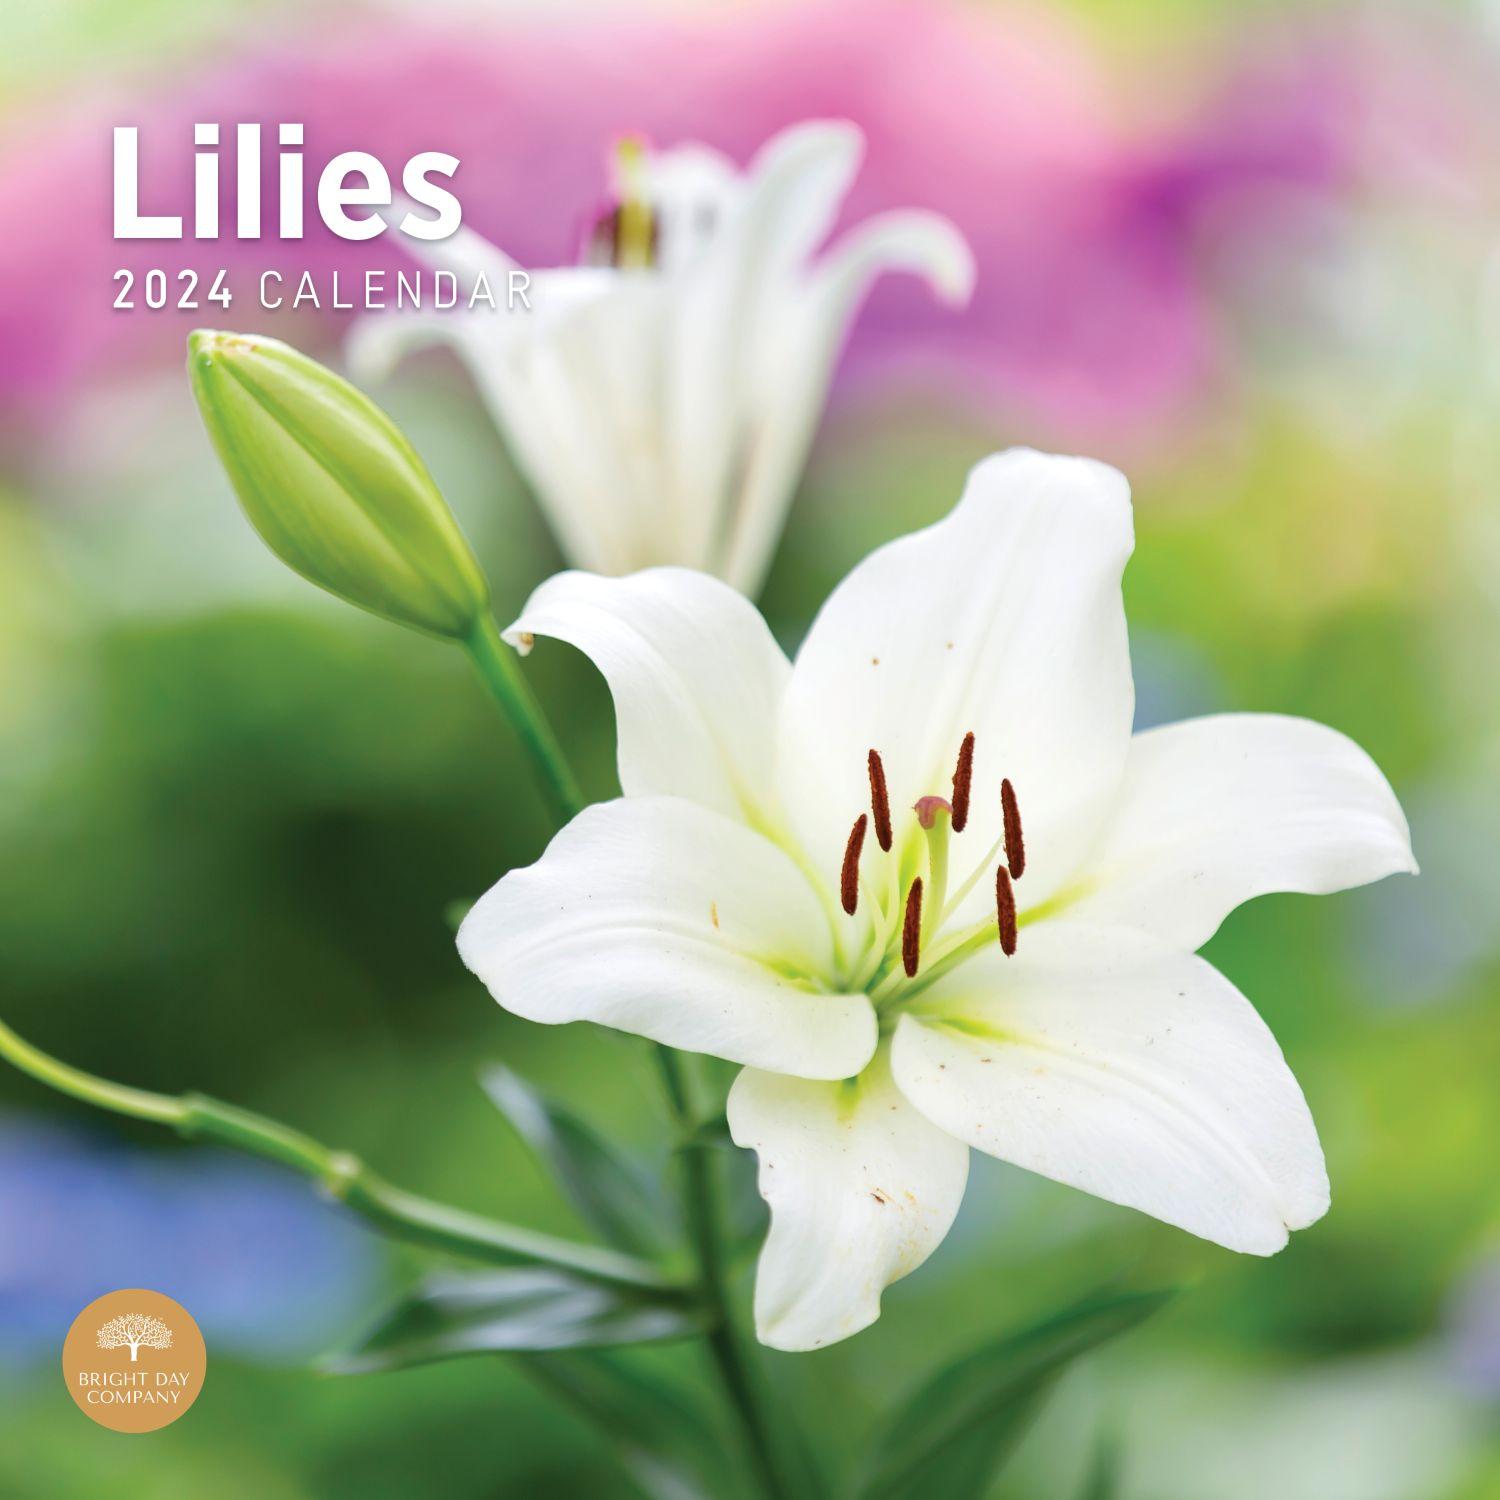 Lilies 2024 Wall Calendar